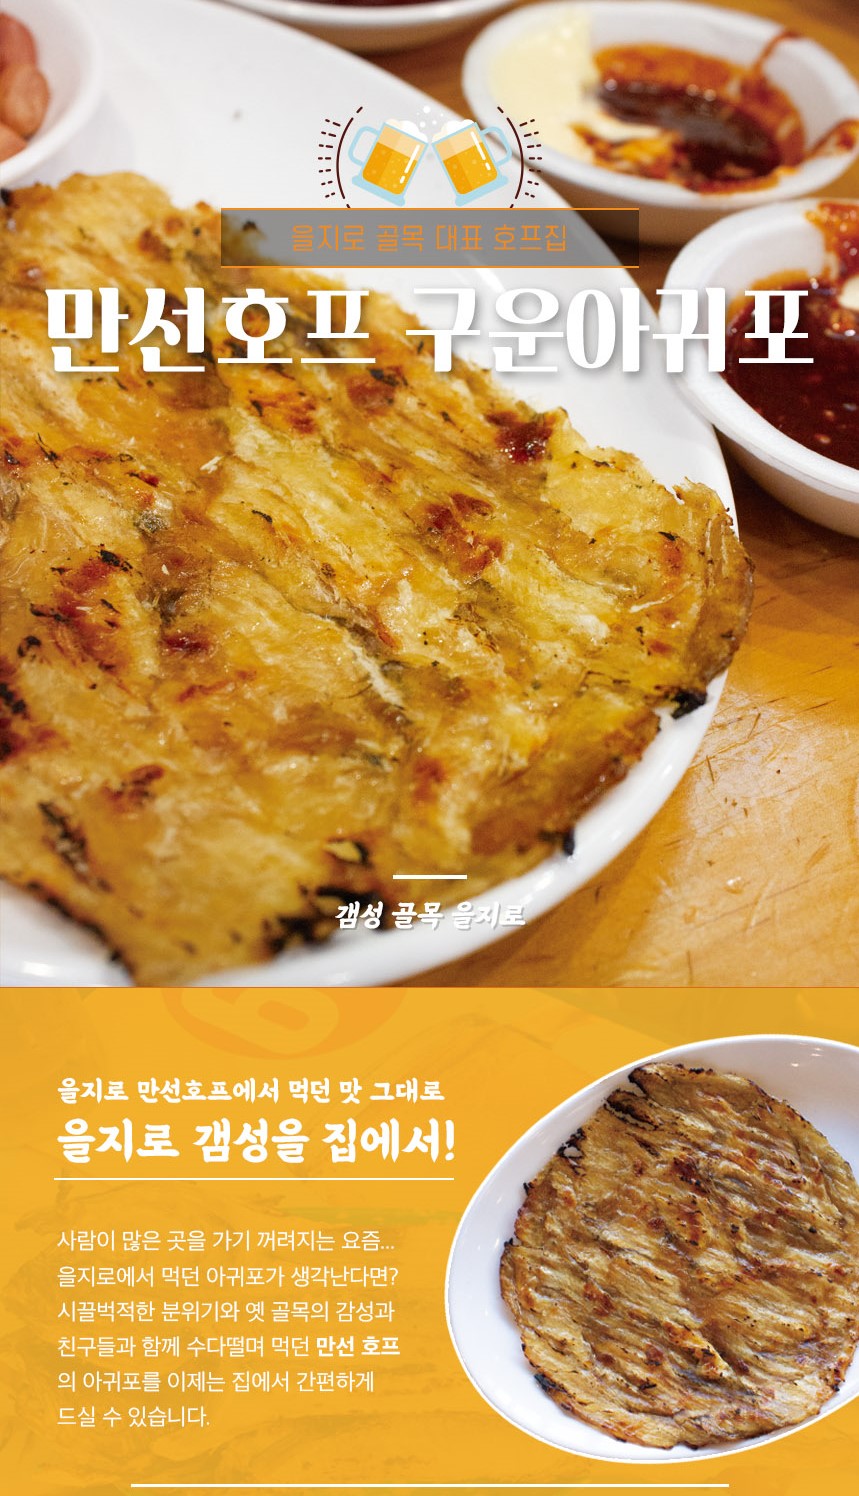 韓國食品-[만선호프] 을지로 구운아귀포 260g